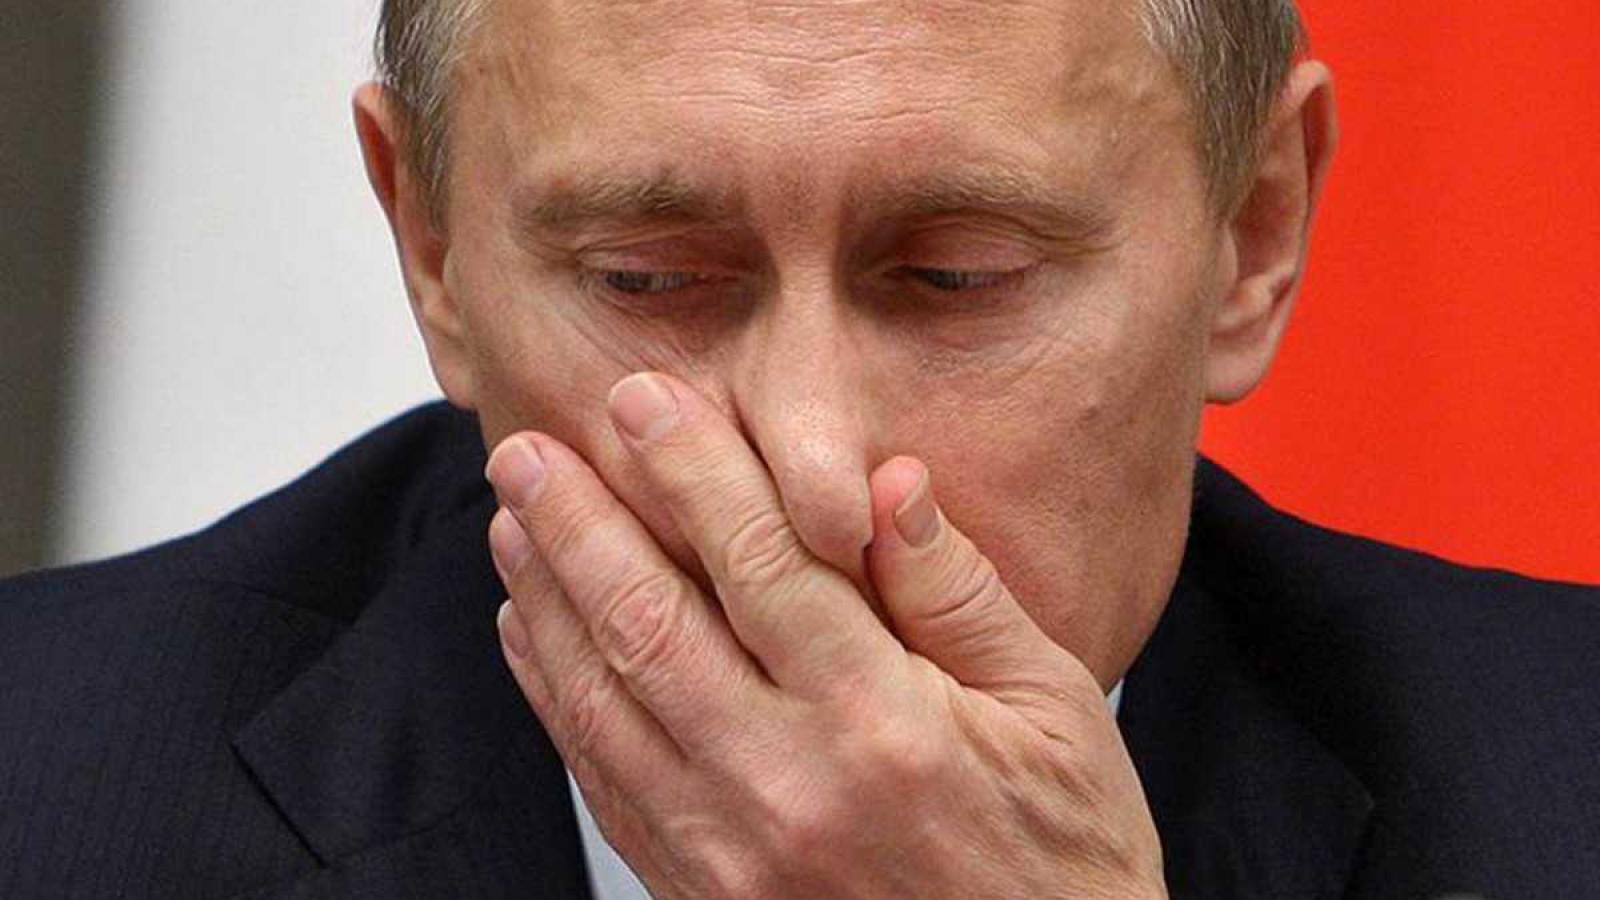 Владимир Путин вдохнул экспериментальный порошок